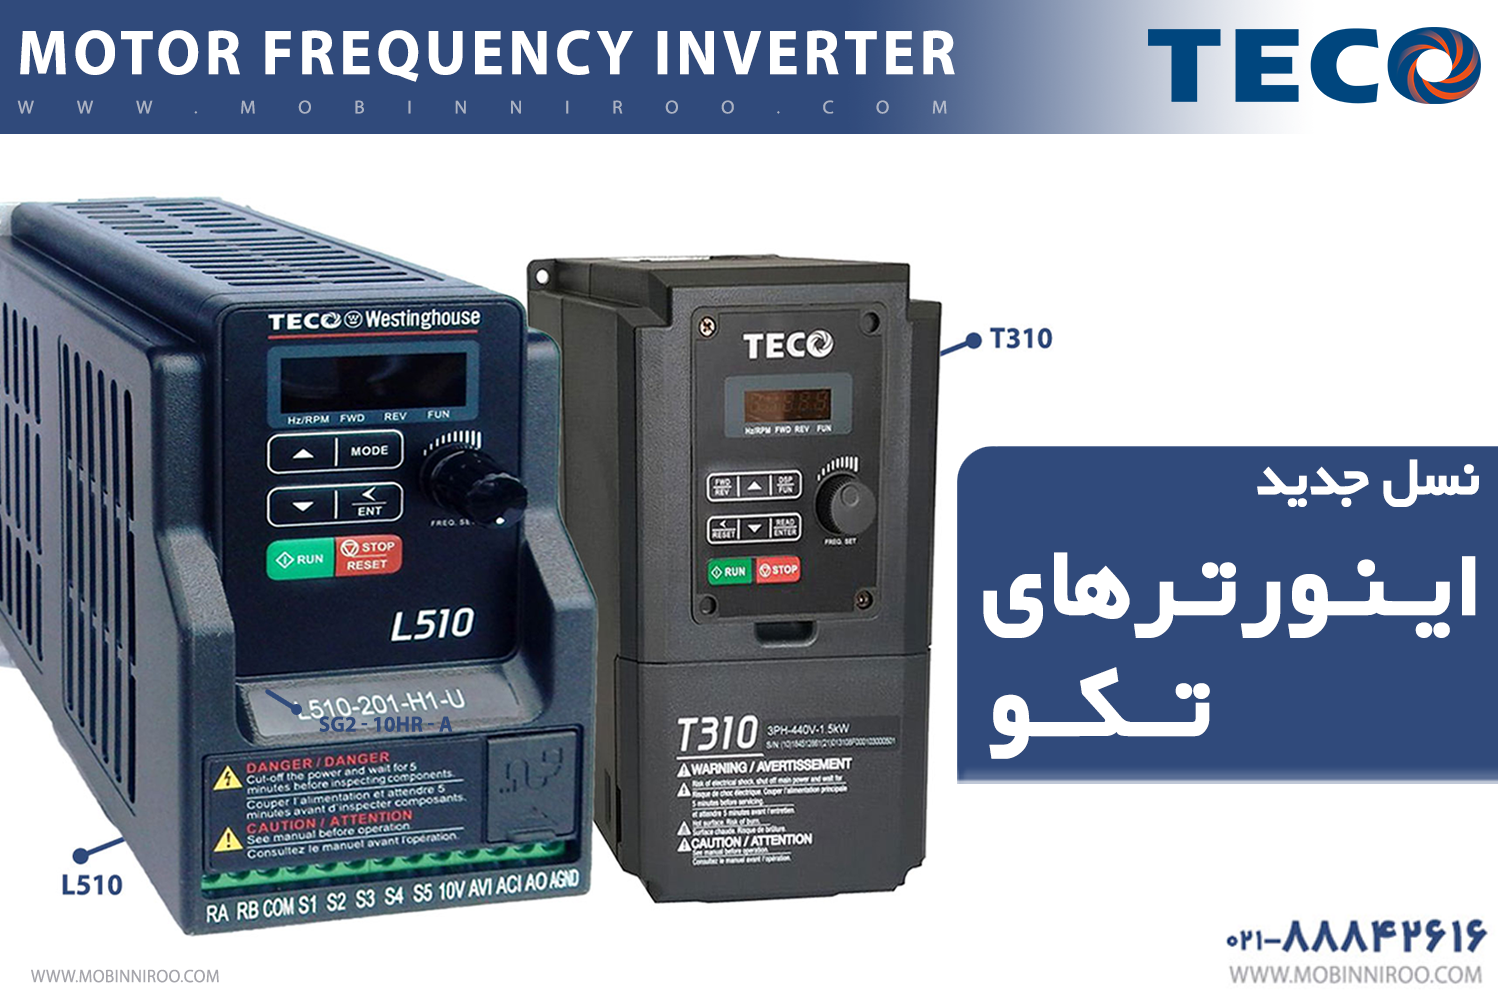  Motor frequency inverter (TECO)  اینورتر 